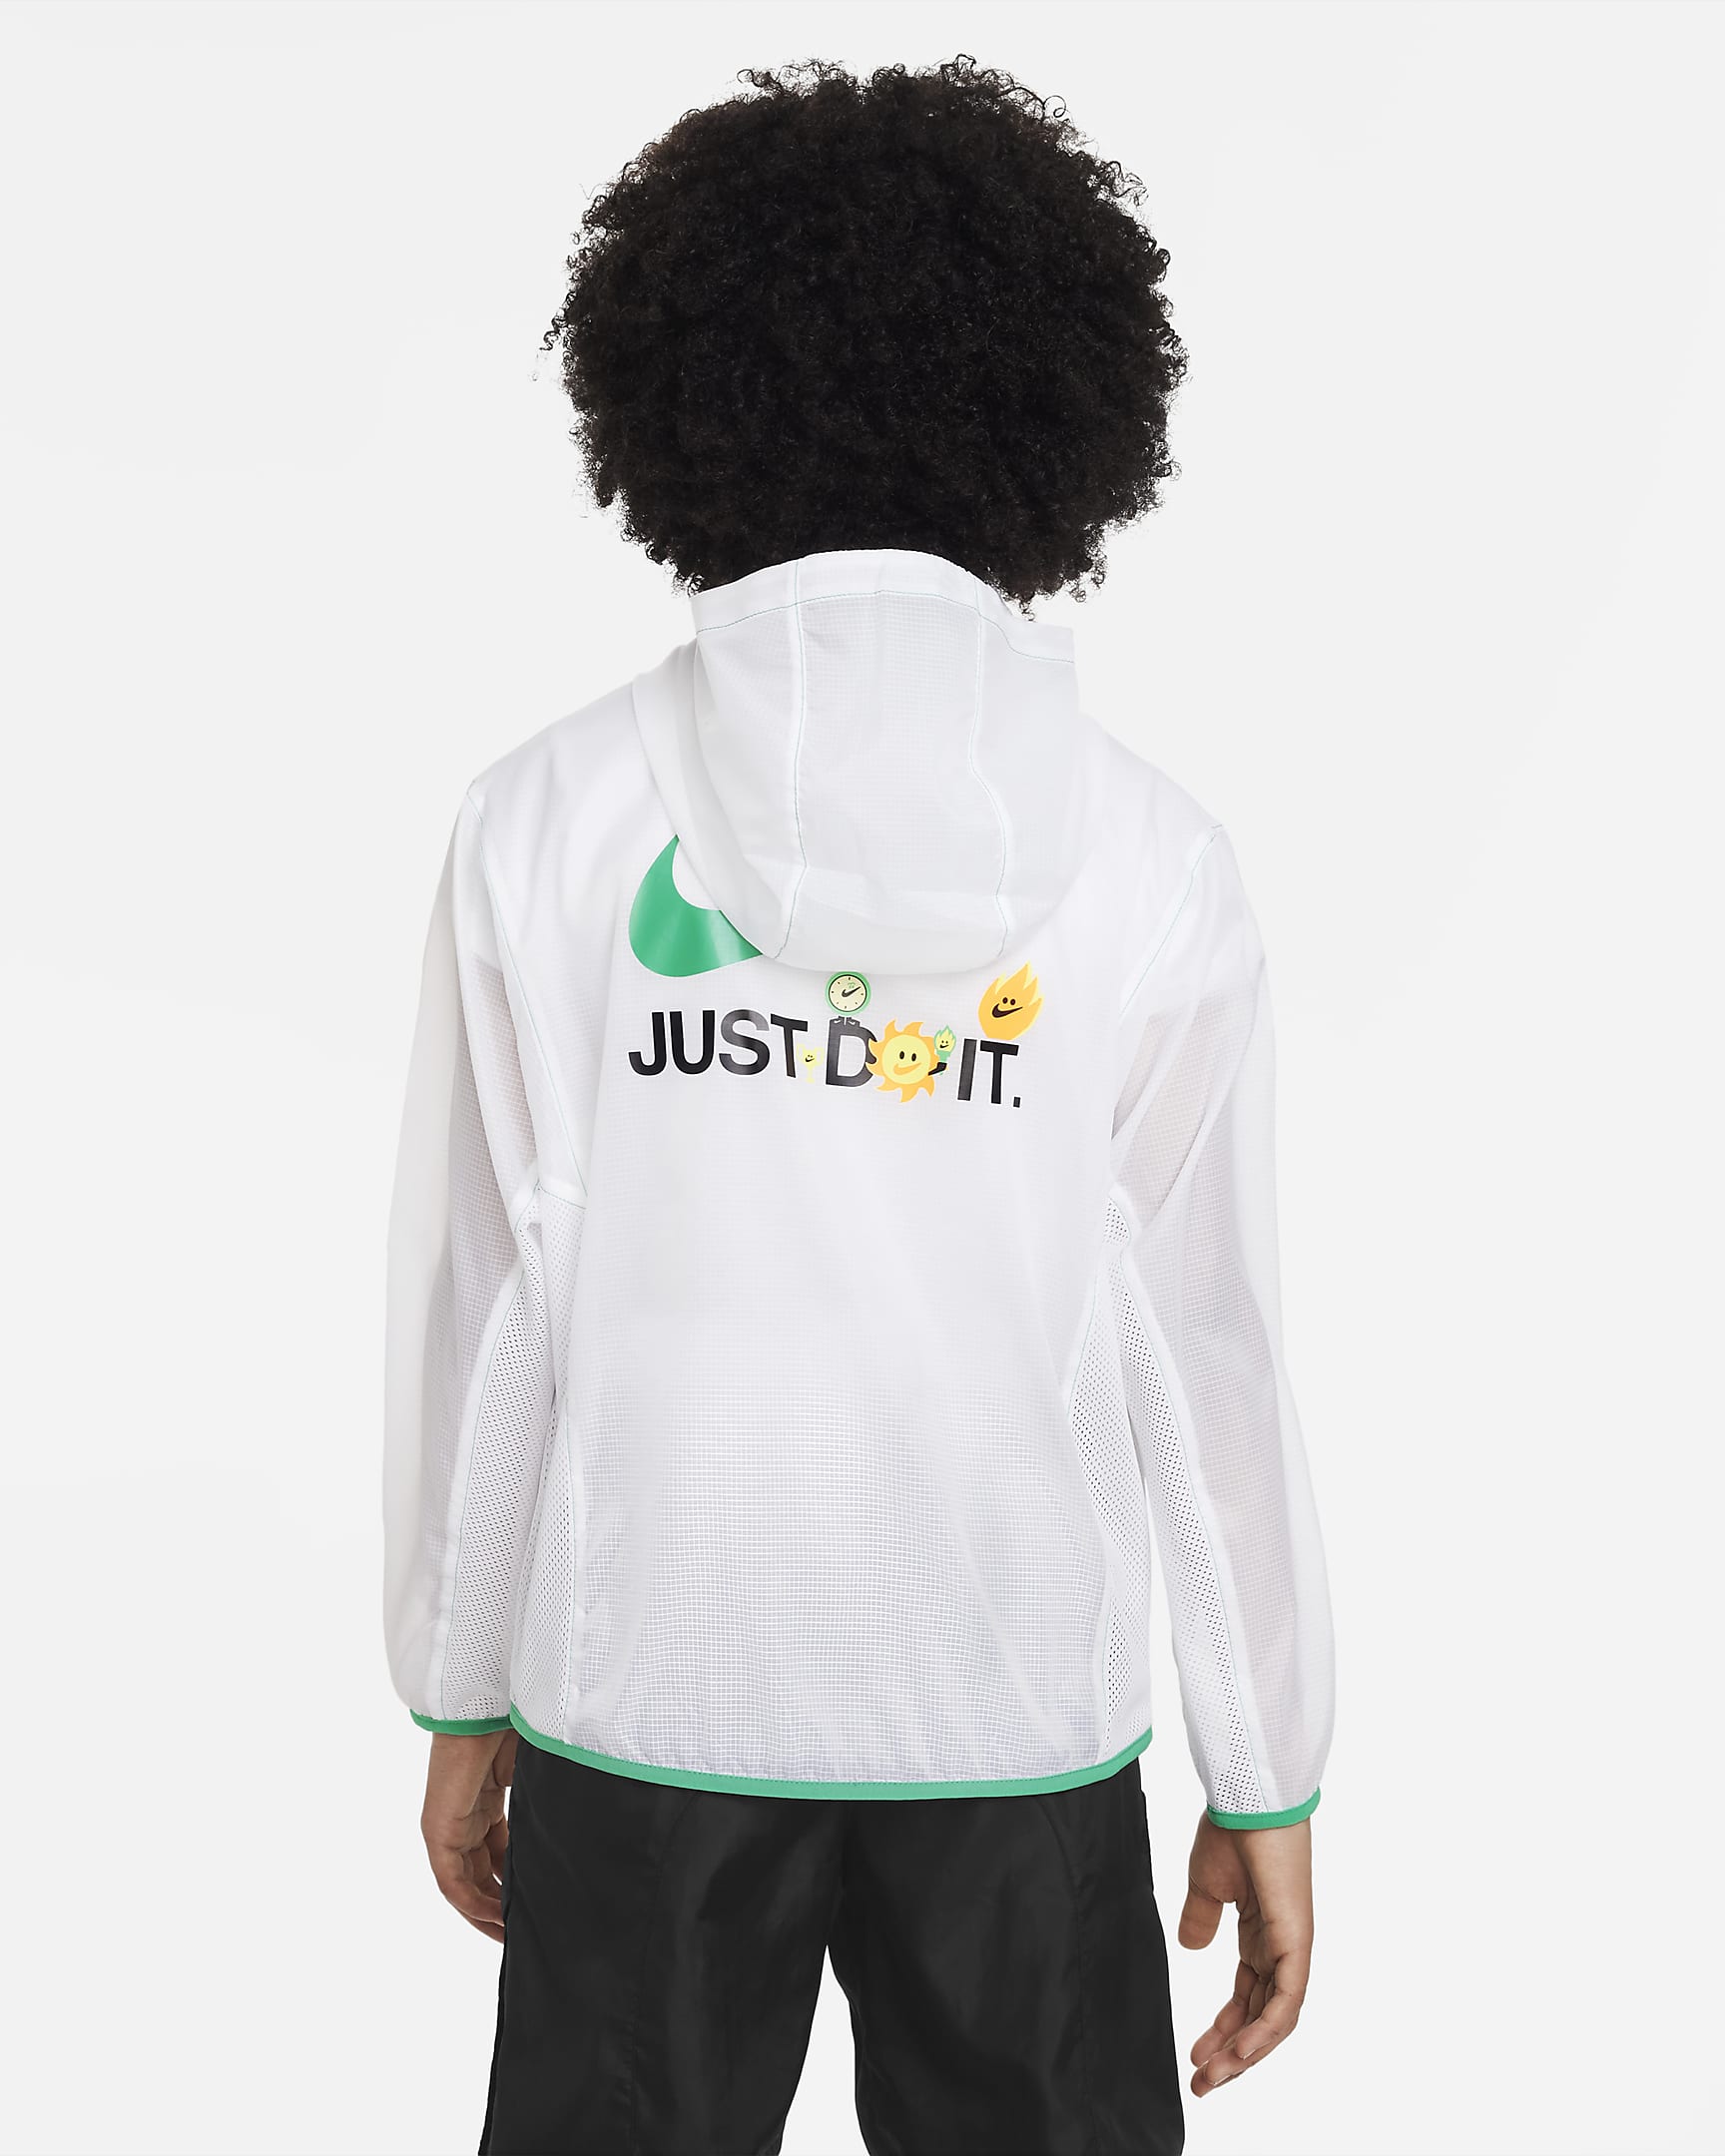 Nike Sportswear Older Kids' (Boys') Packable Jacket. Nike SG